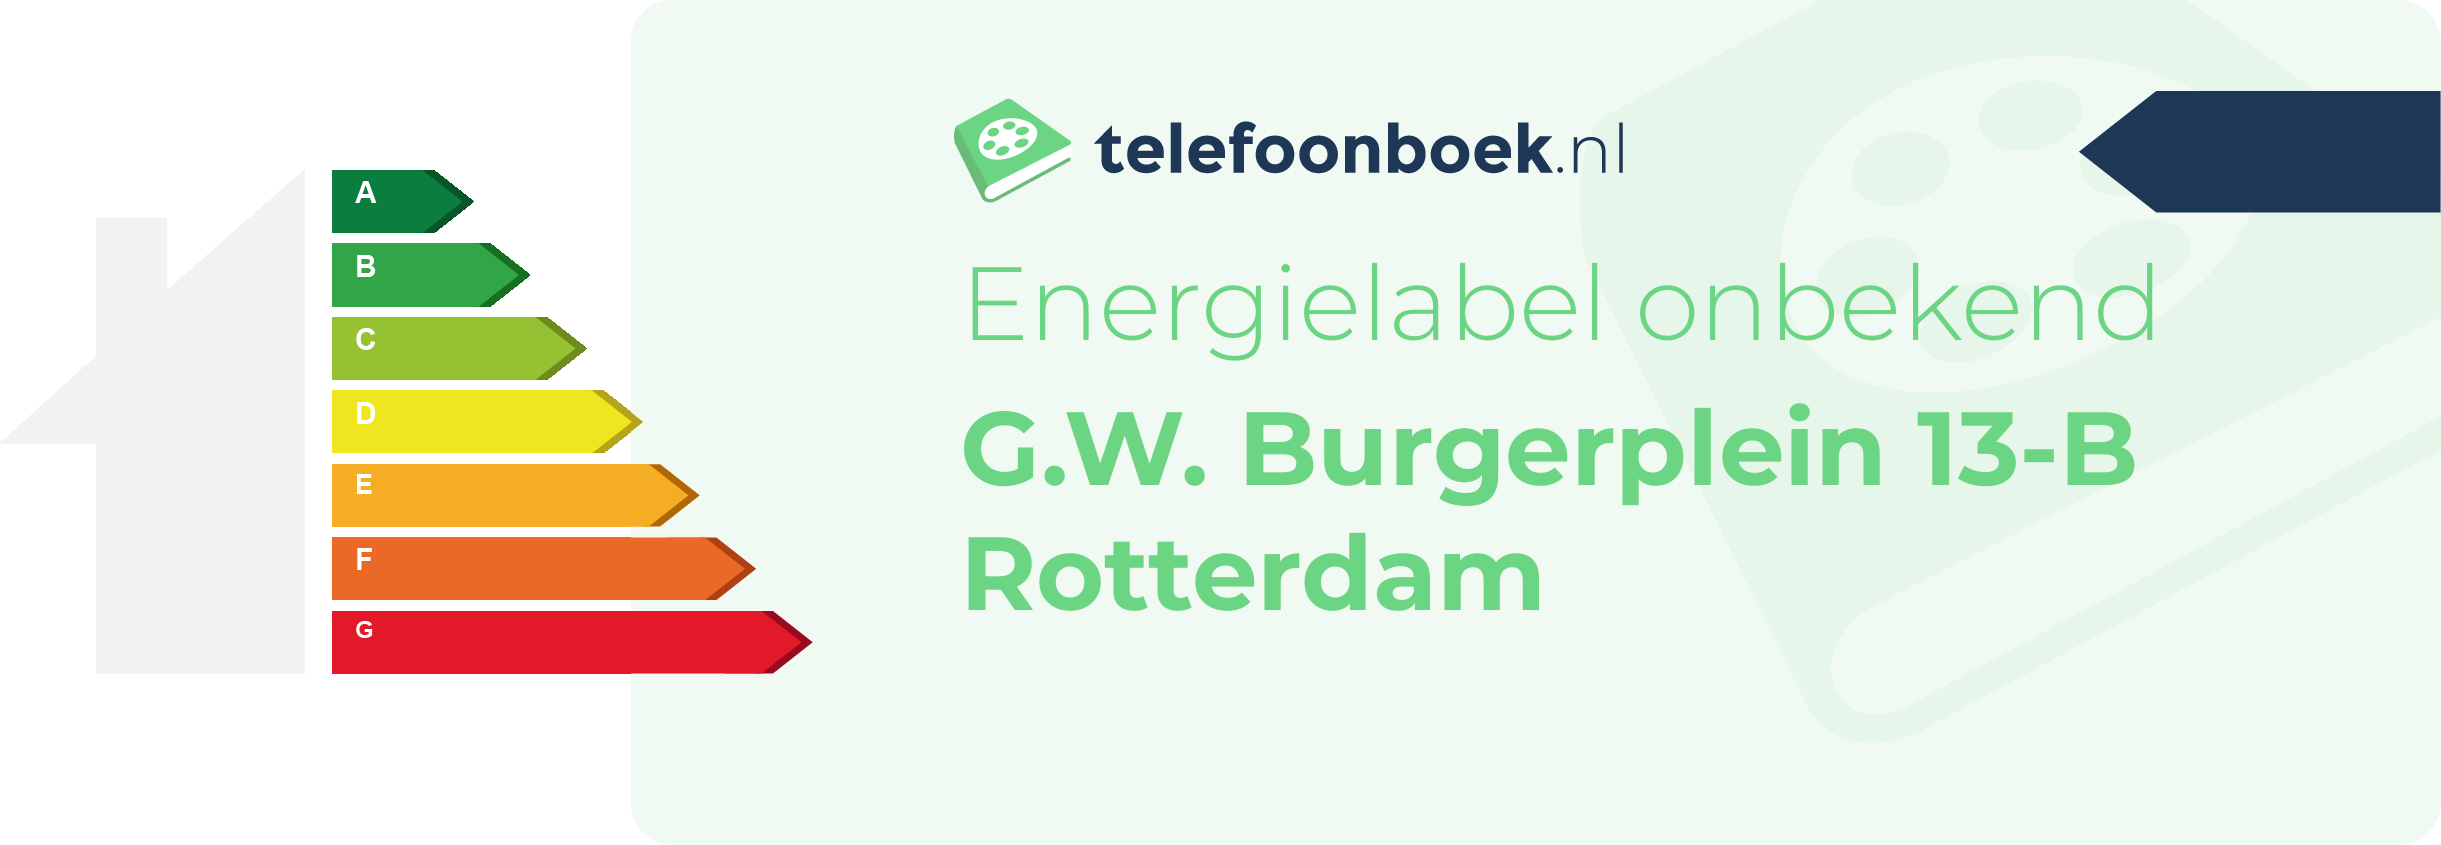 Energielabel G.W. Burgerplein 13-B Rotterdam